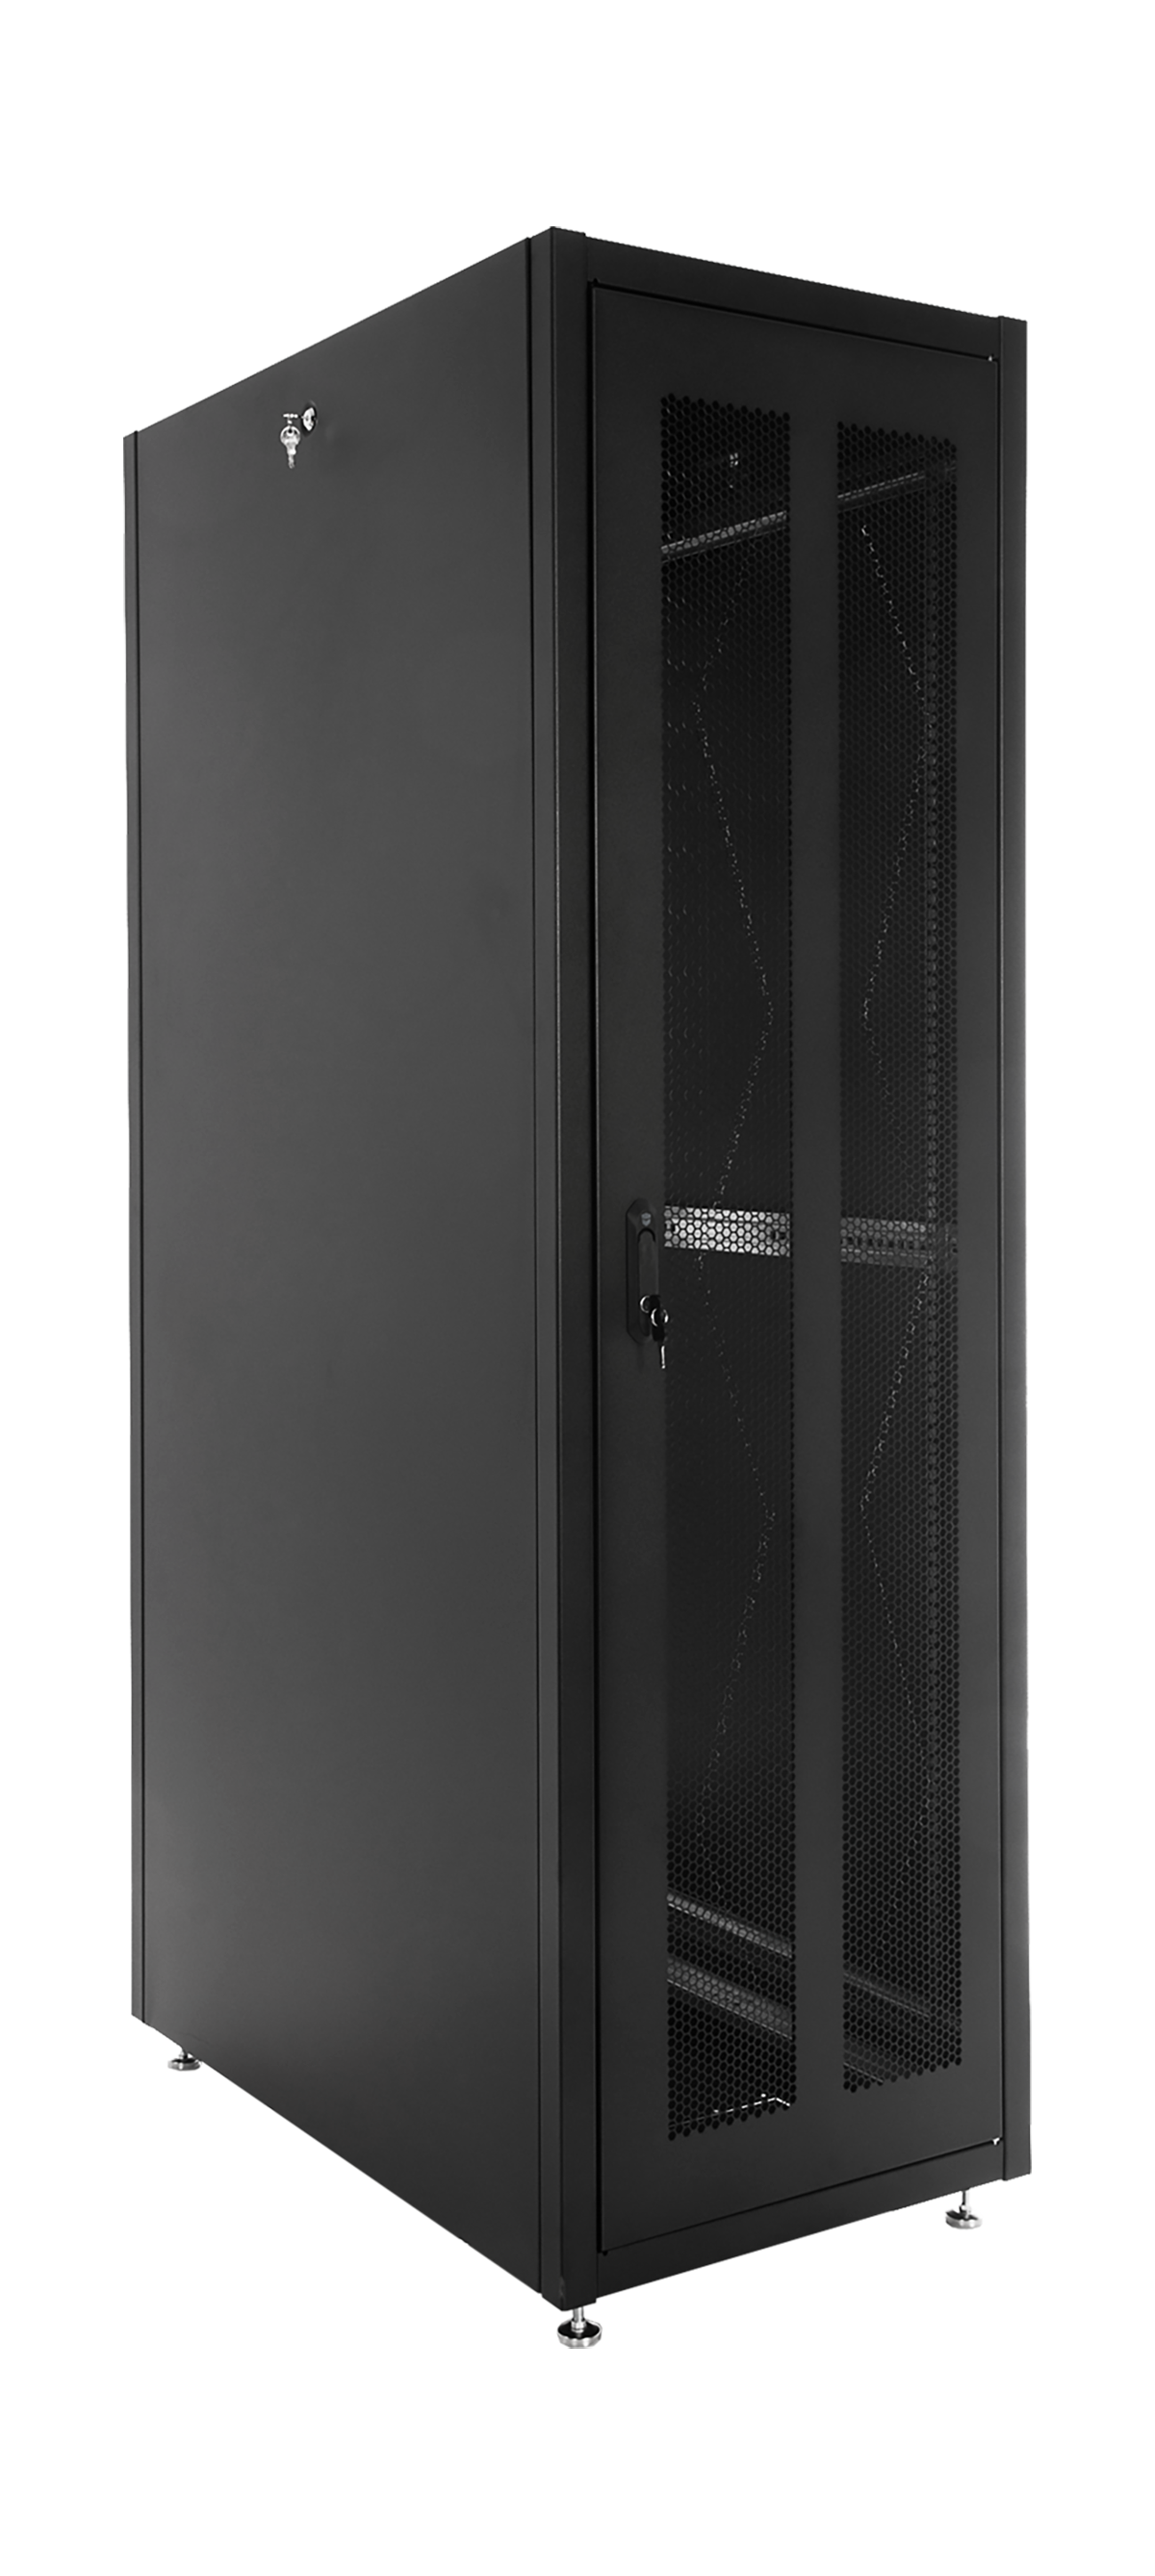 Шкаф телекоммуникационный напольный ЭКОНОМ 48U (600 × 1000) дверь перфорированная 2 шт., цвет черный